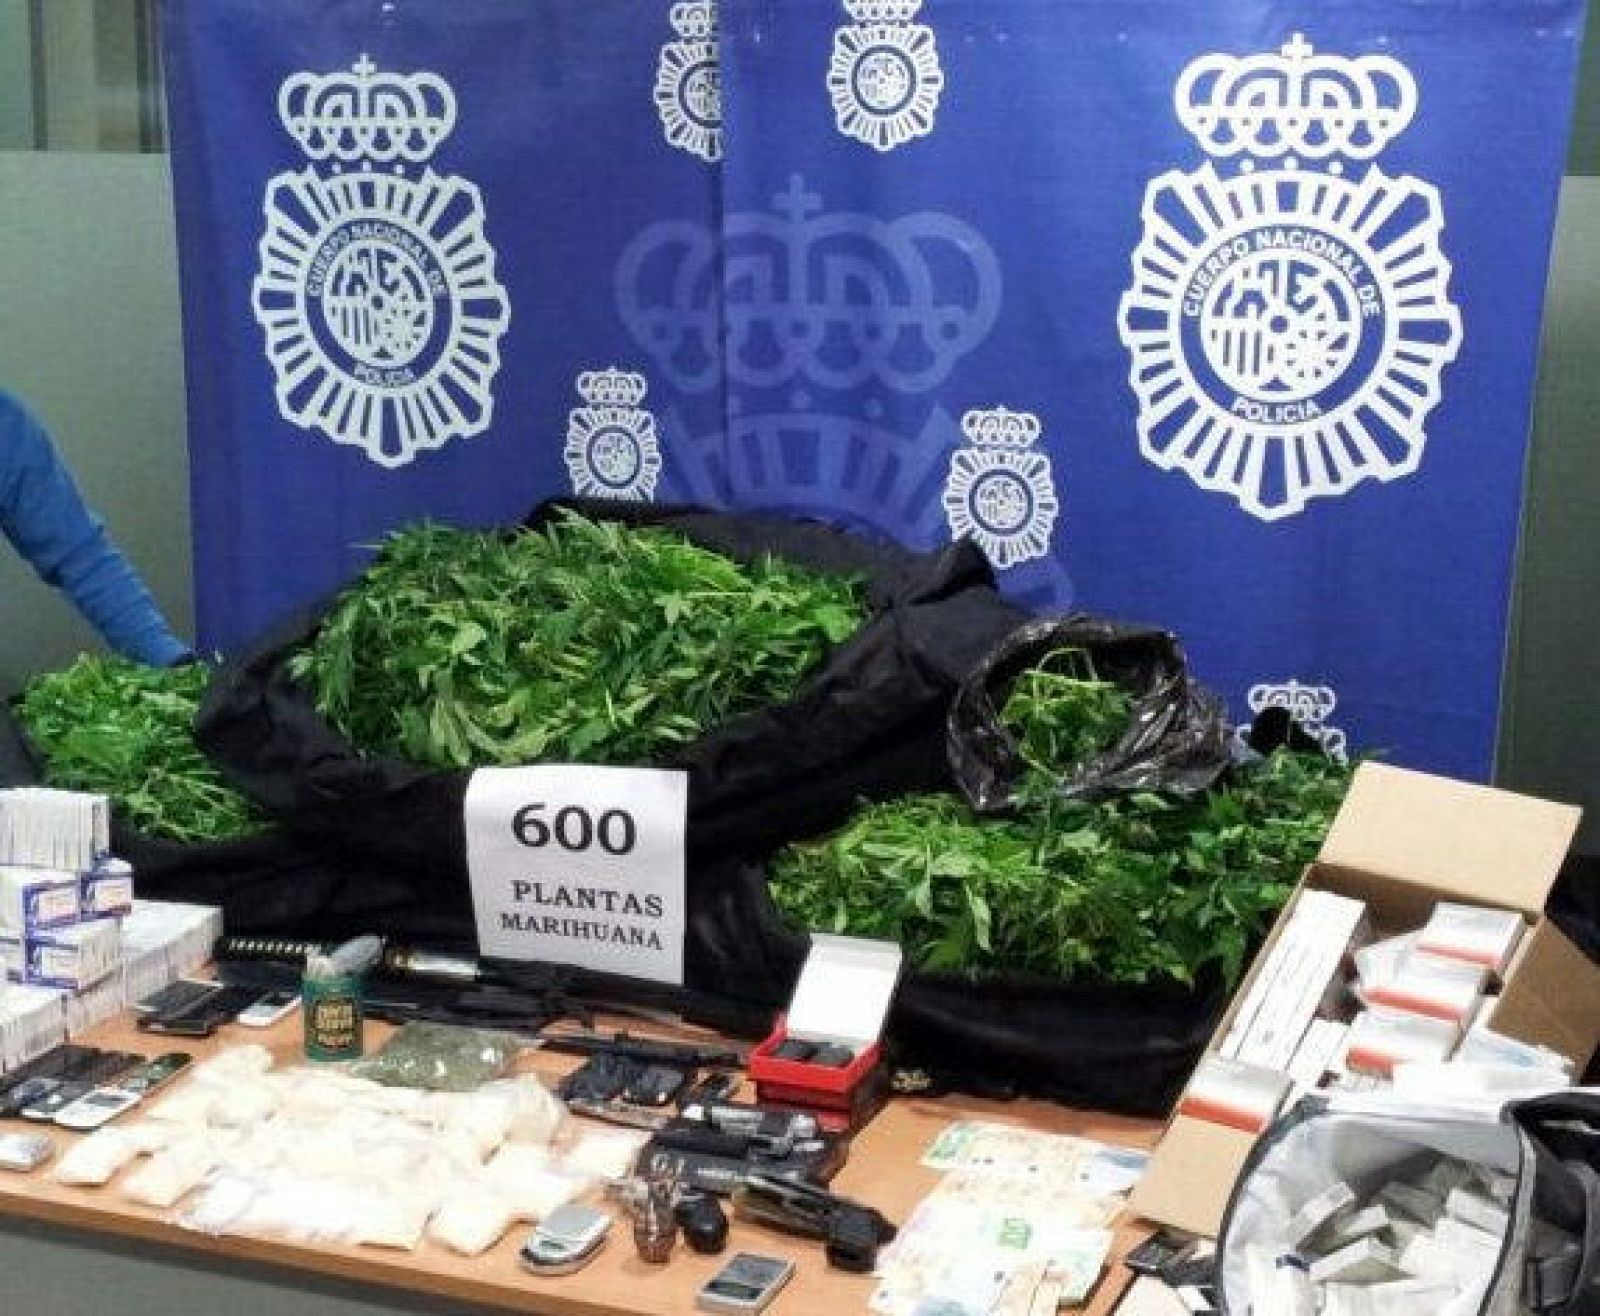 El grupo asentado en Alicante también se dedicaba al tráfico de speed y de marihuana y disponía de una "oficina de cobros" para saldar deudas de drogas.